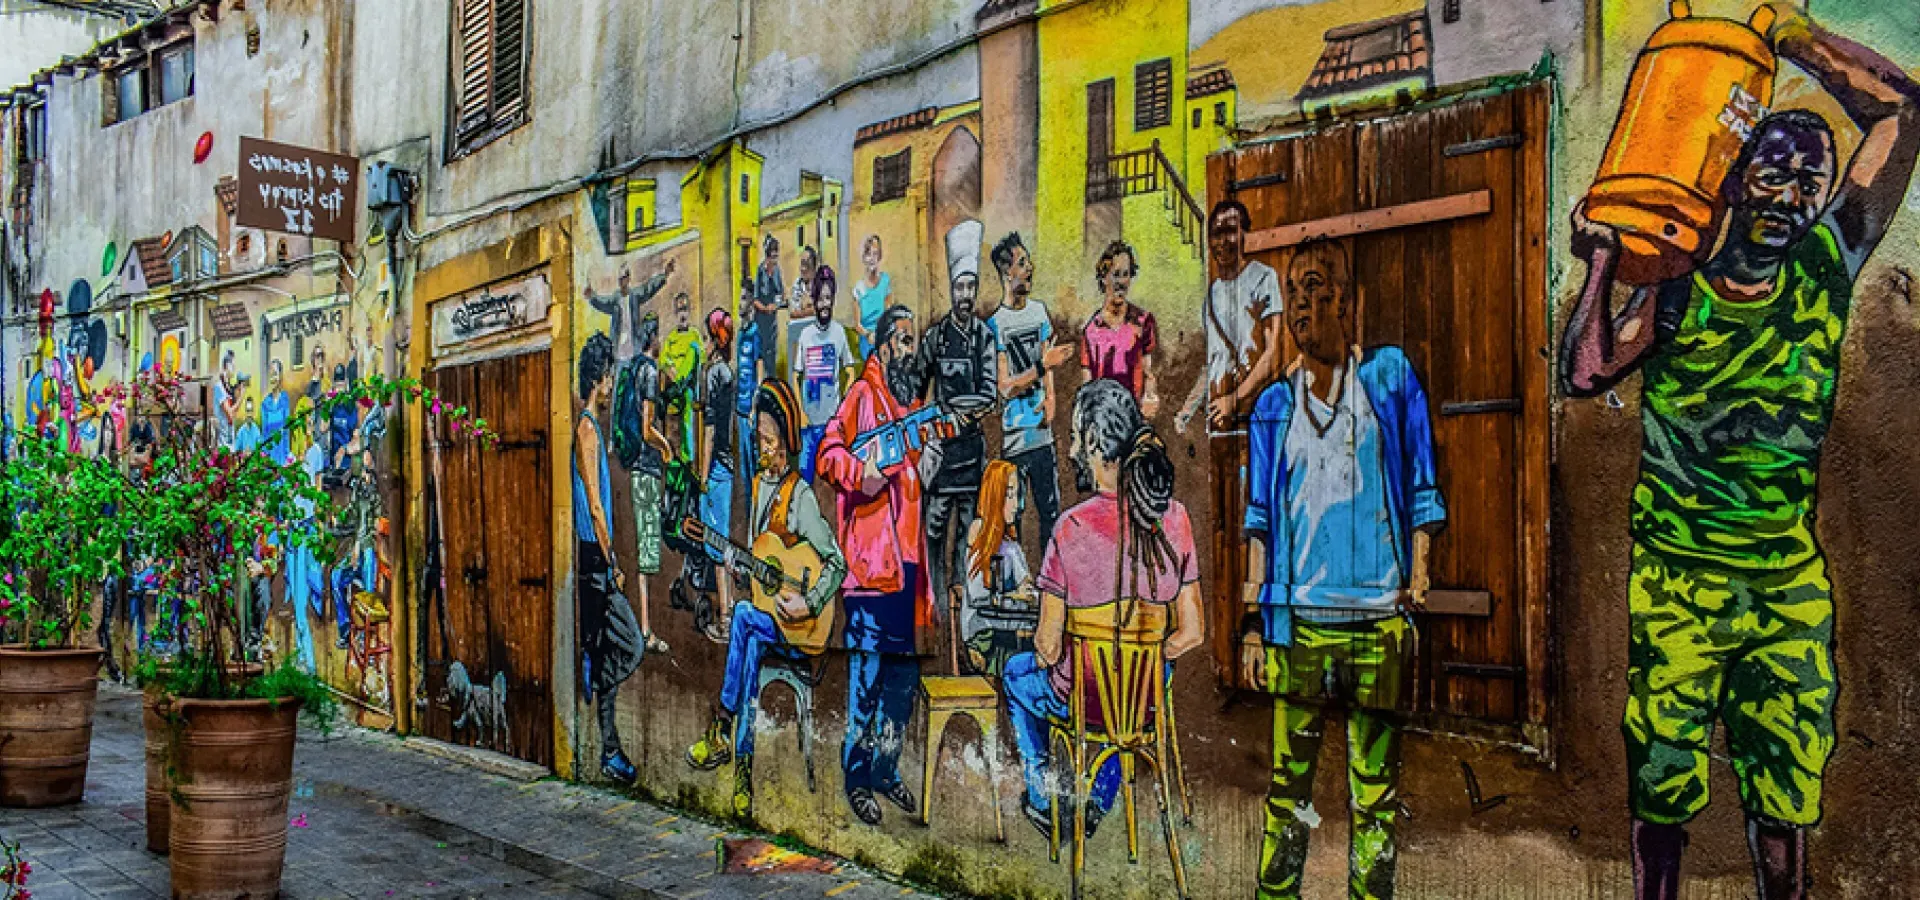 A photo of graffiti in a city